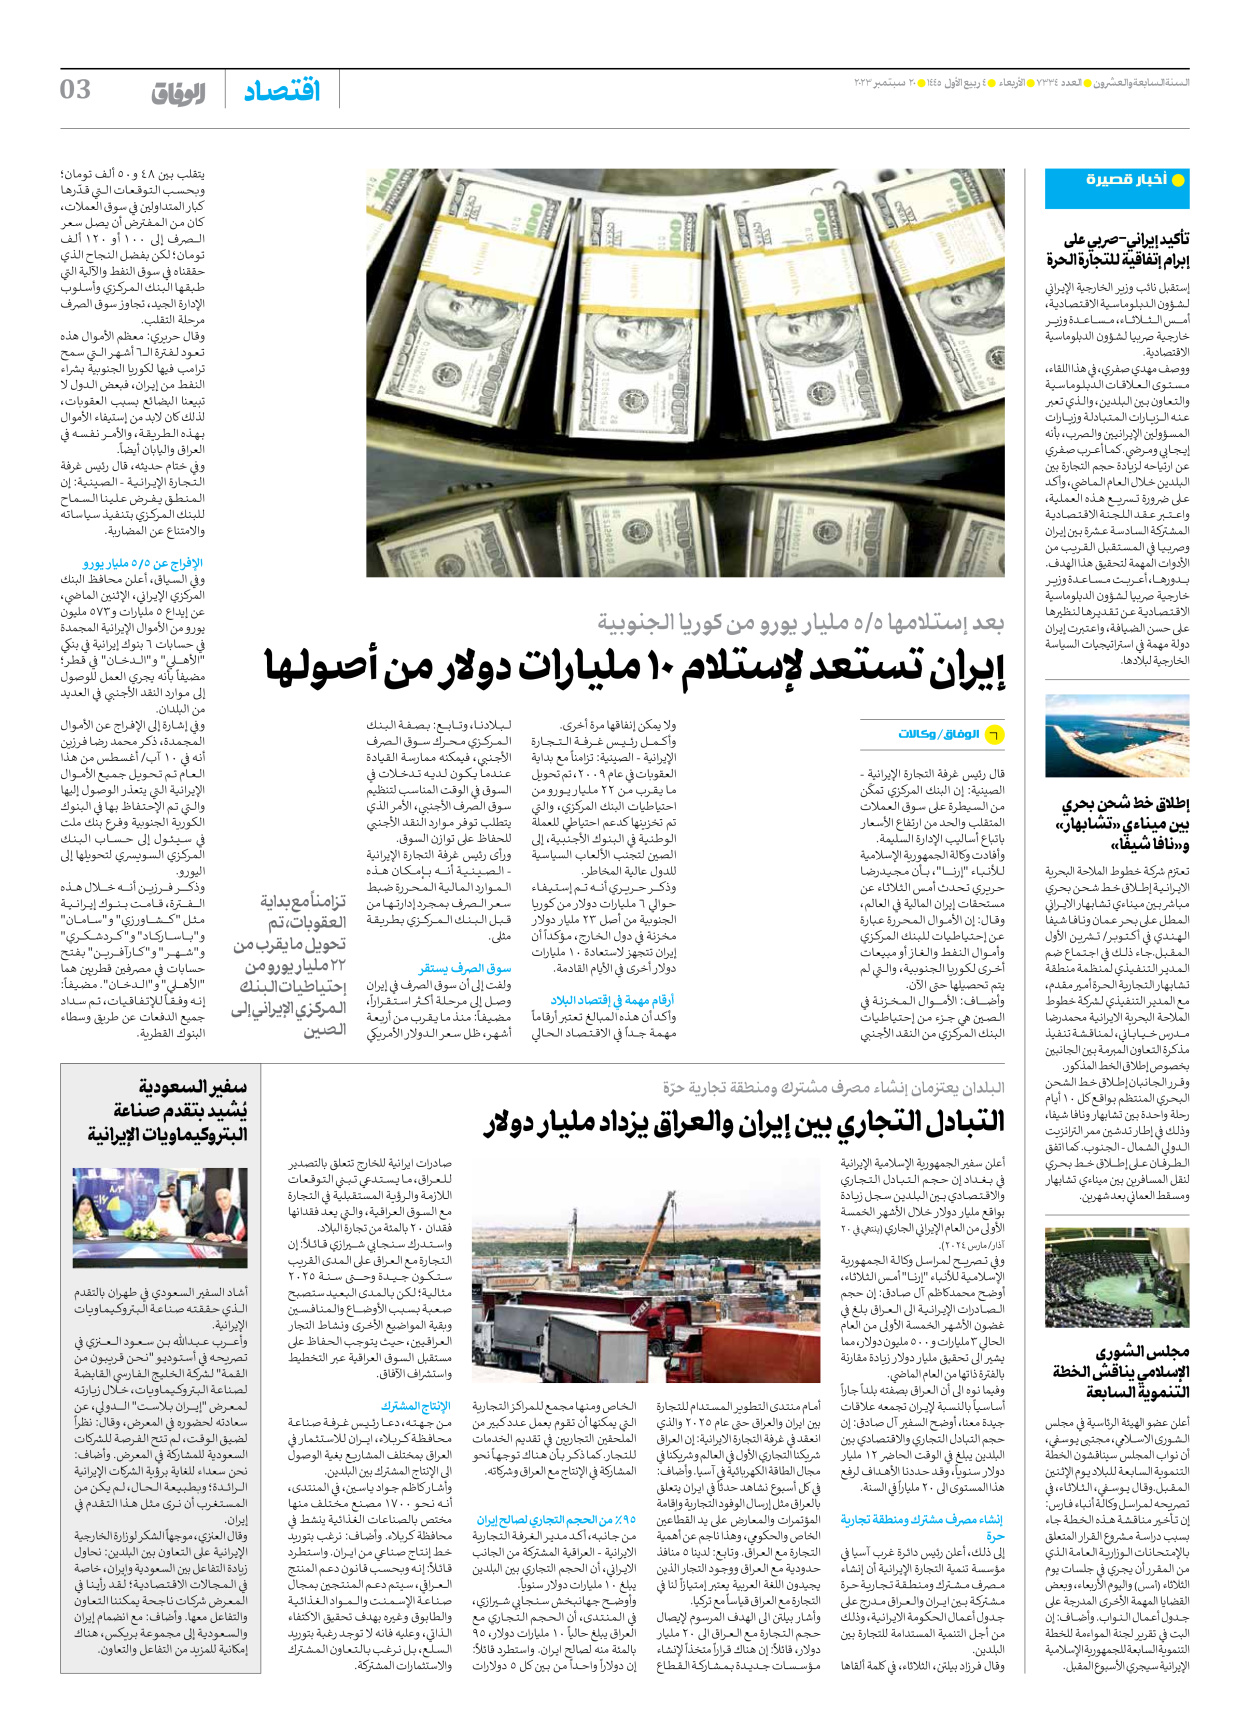 صحیفة ایران الدولیة الوفاق - العدد سبعة آلاف وثلاثمائة وأربعة وثلاثون - ٢٠ سبتمبر ٢٠٢٣ - الصفحة ۳